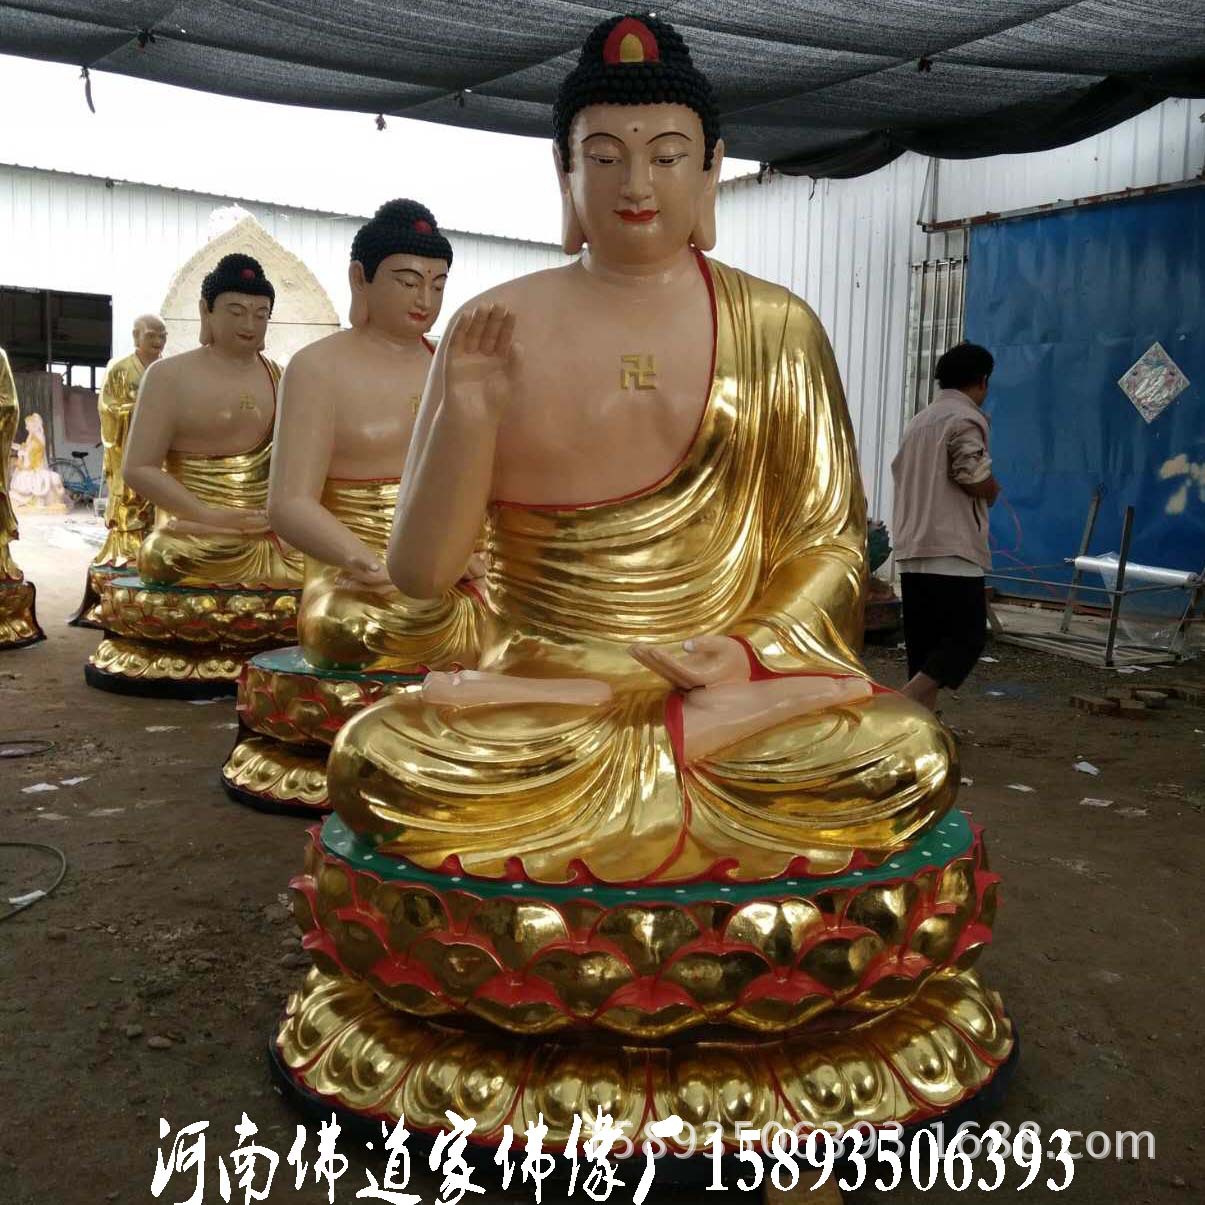 藏传佛教藏佛密宗佛像 百年传承供应佛教用品 河南大型佛像神像示例图6